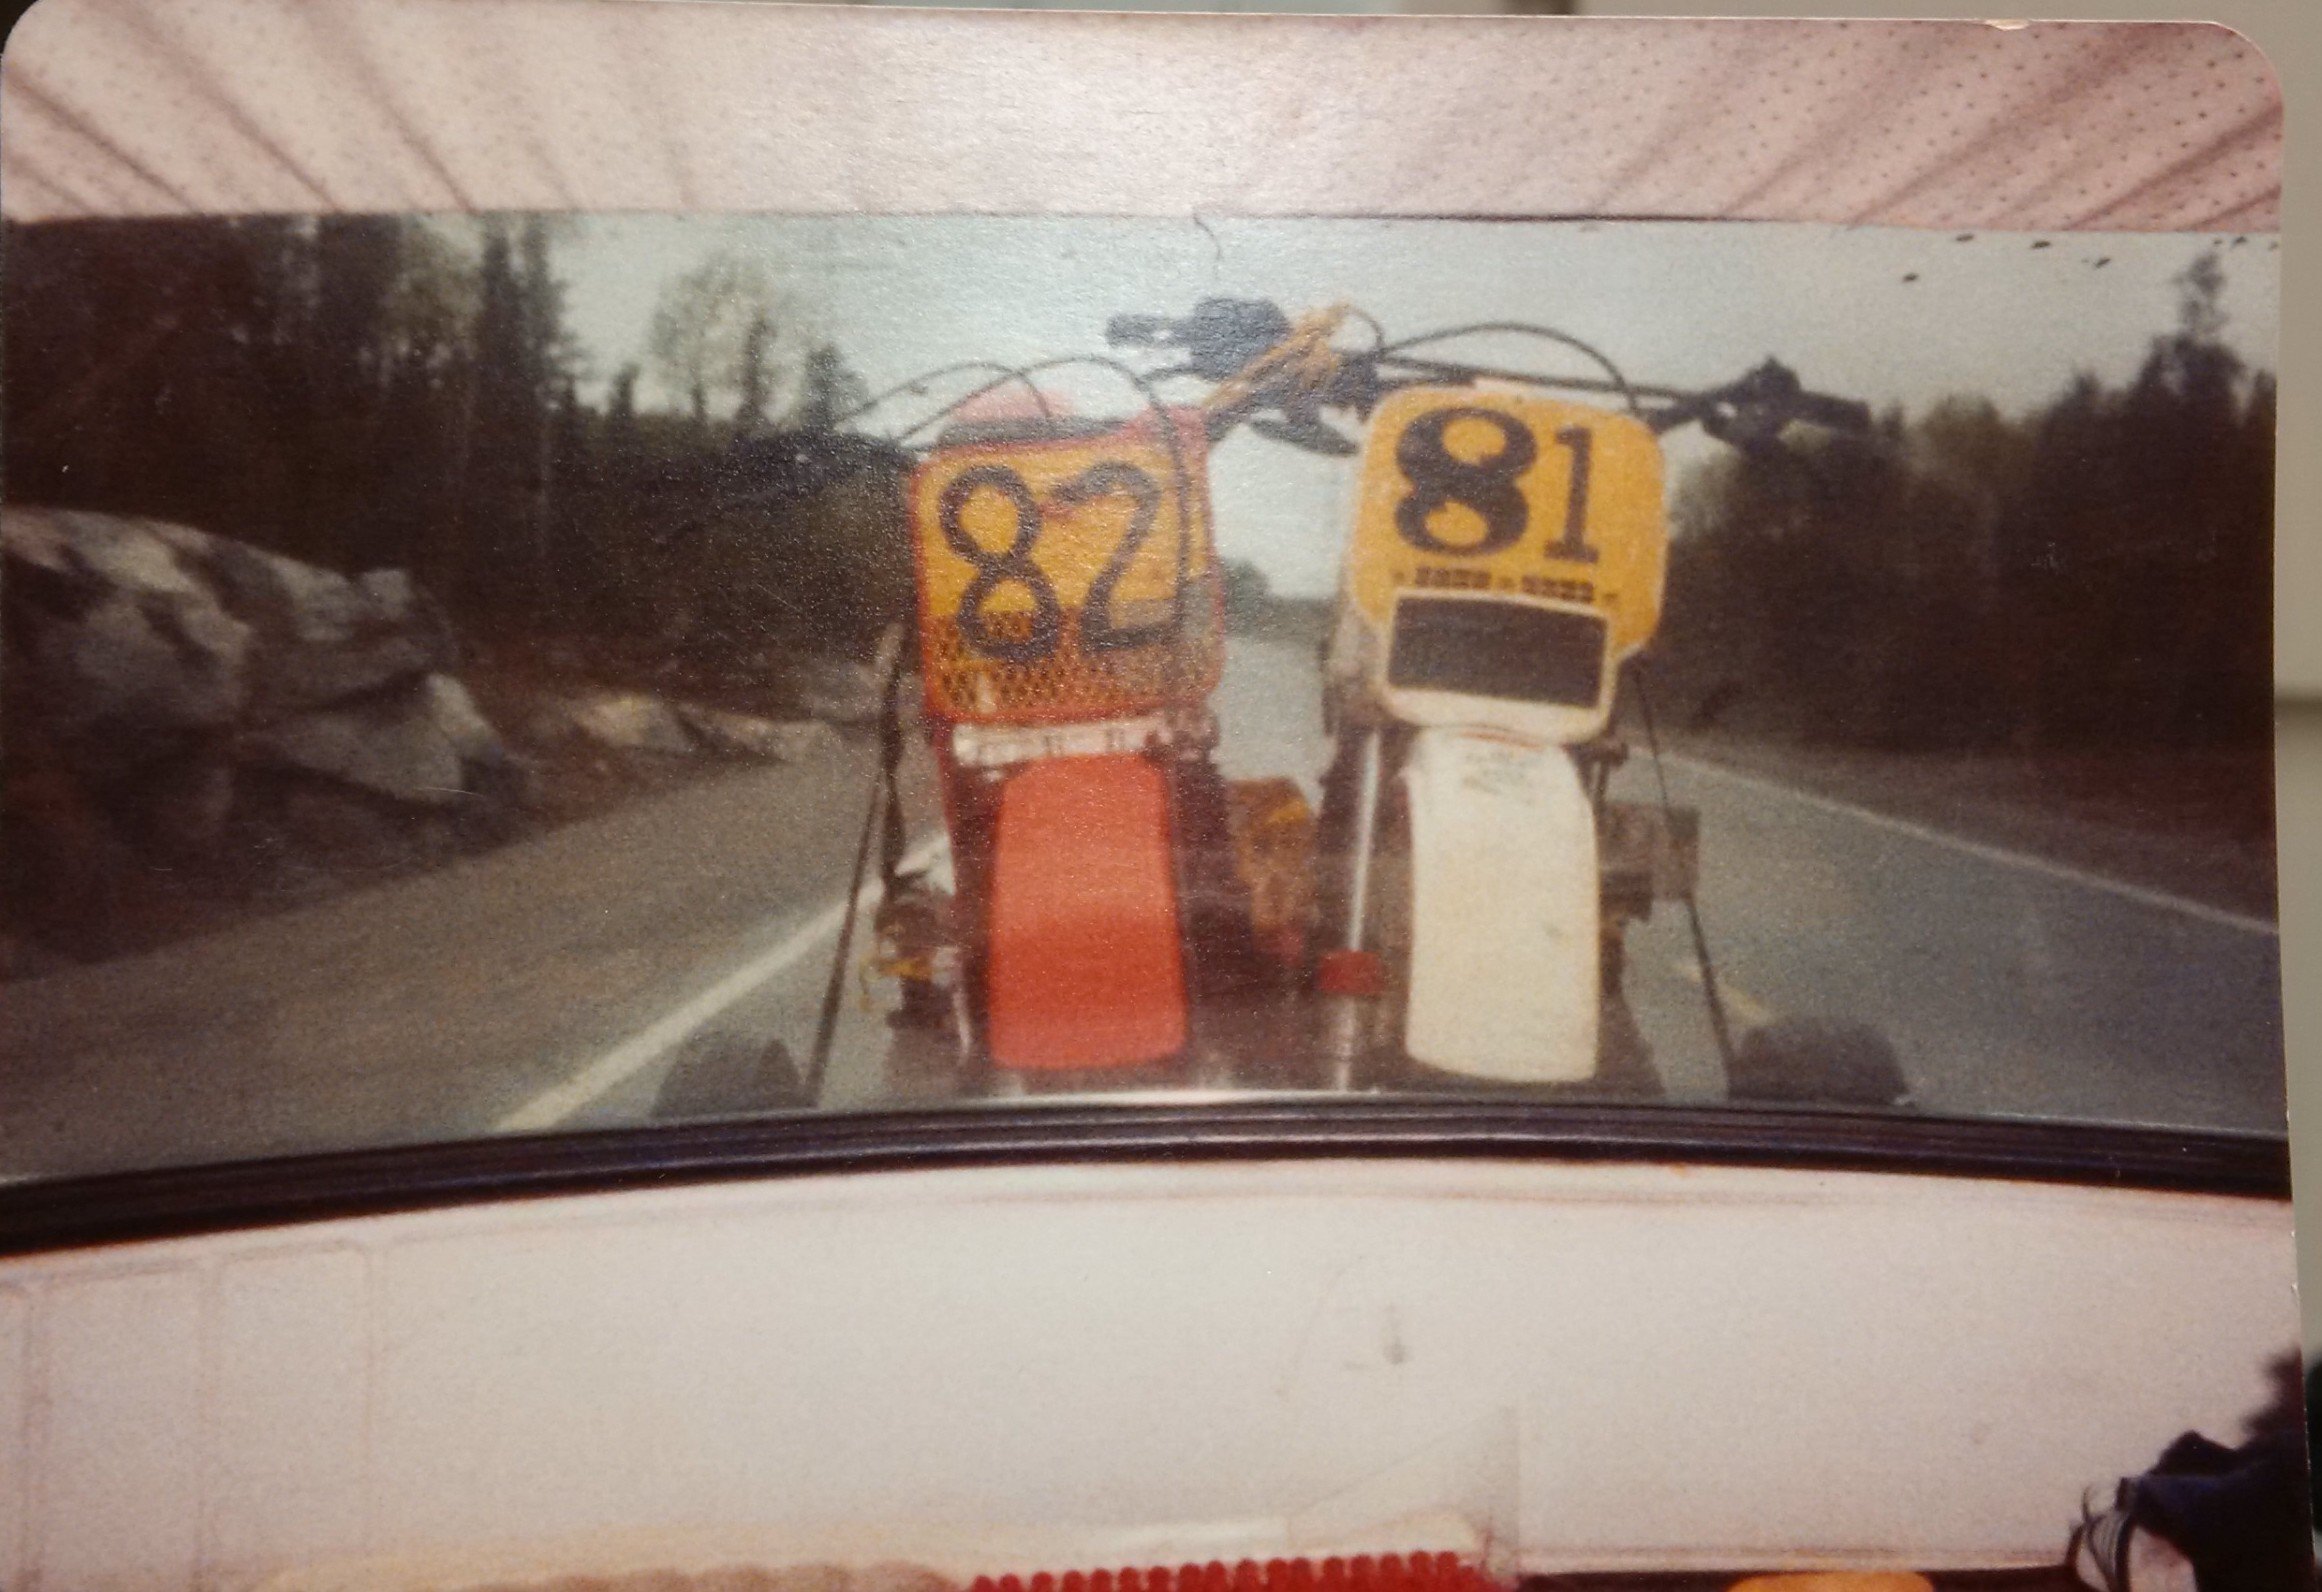 Racing in 1983